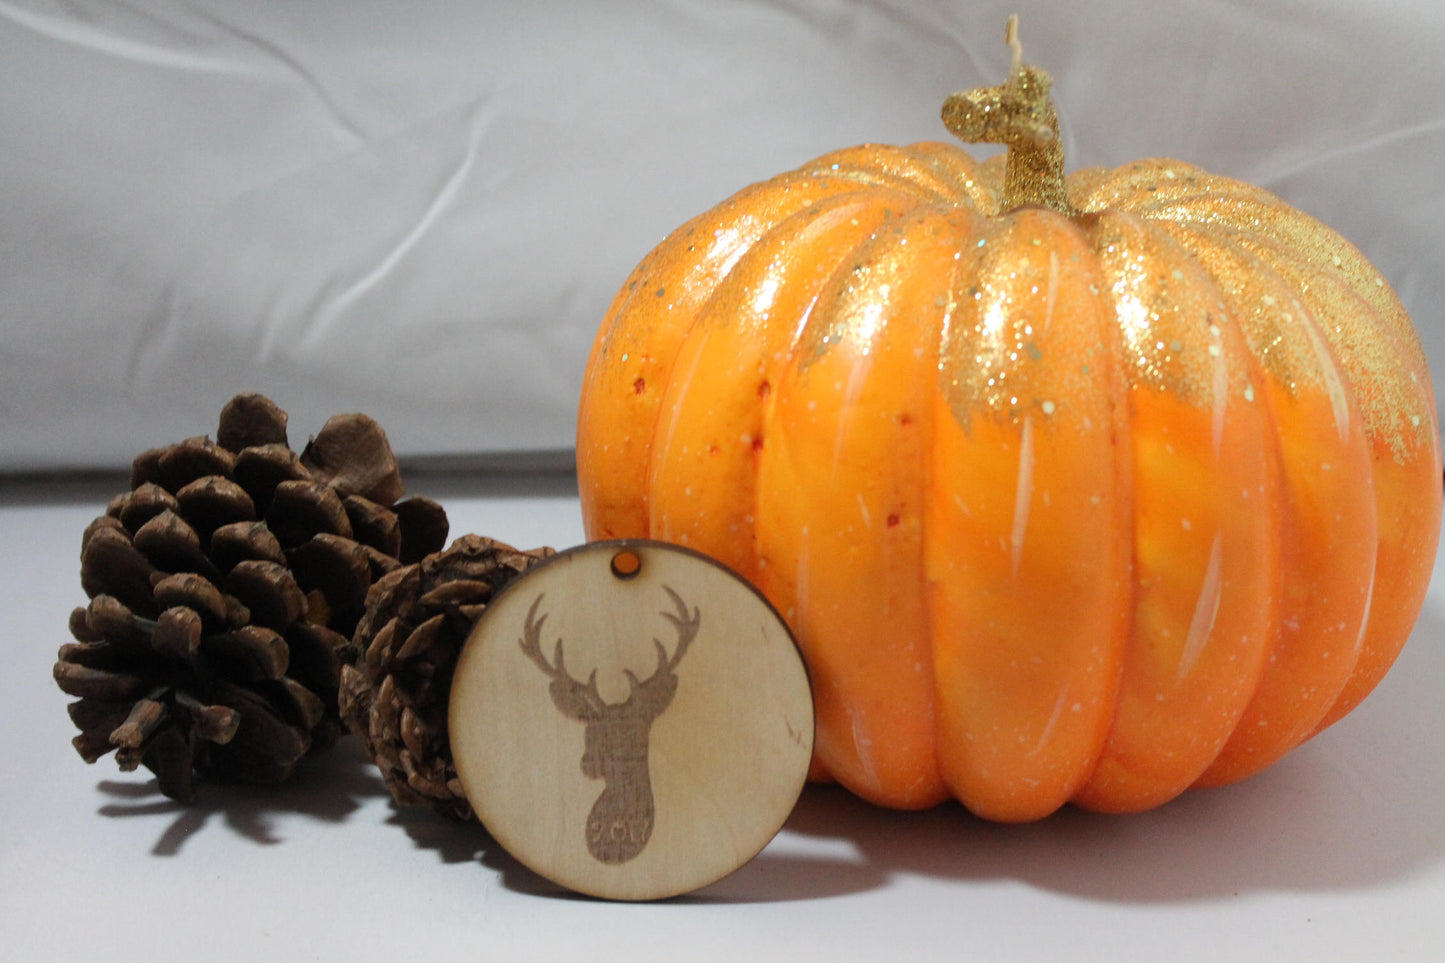 Deer, Reindeer Head, Deer with Custom Date, Customize, Christmas Ornament, Laser Engraved, Wood Cut Out, Footstepsinthepast